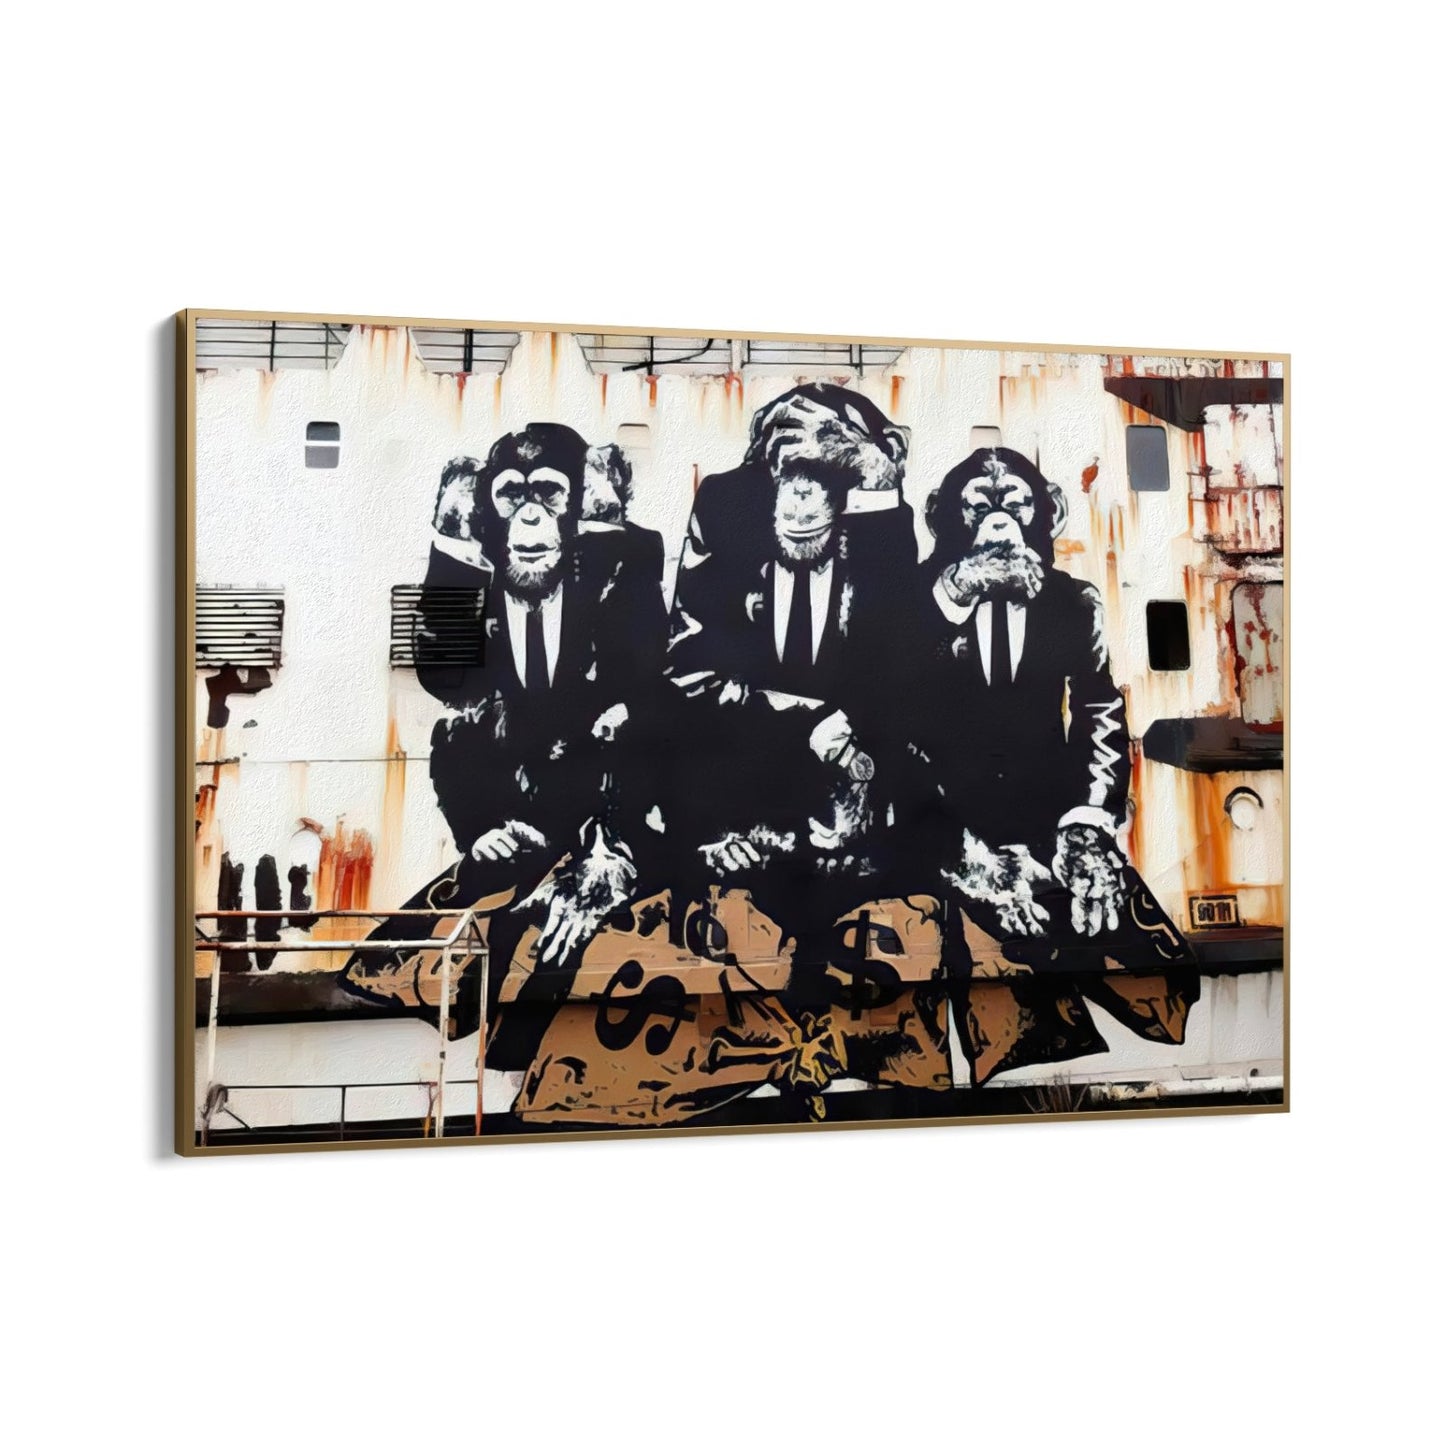 Trys verslo beždžionės, Banksy